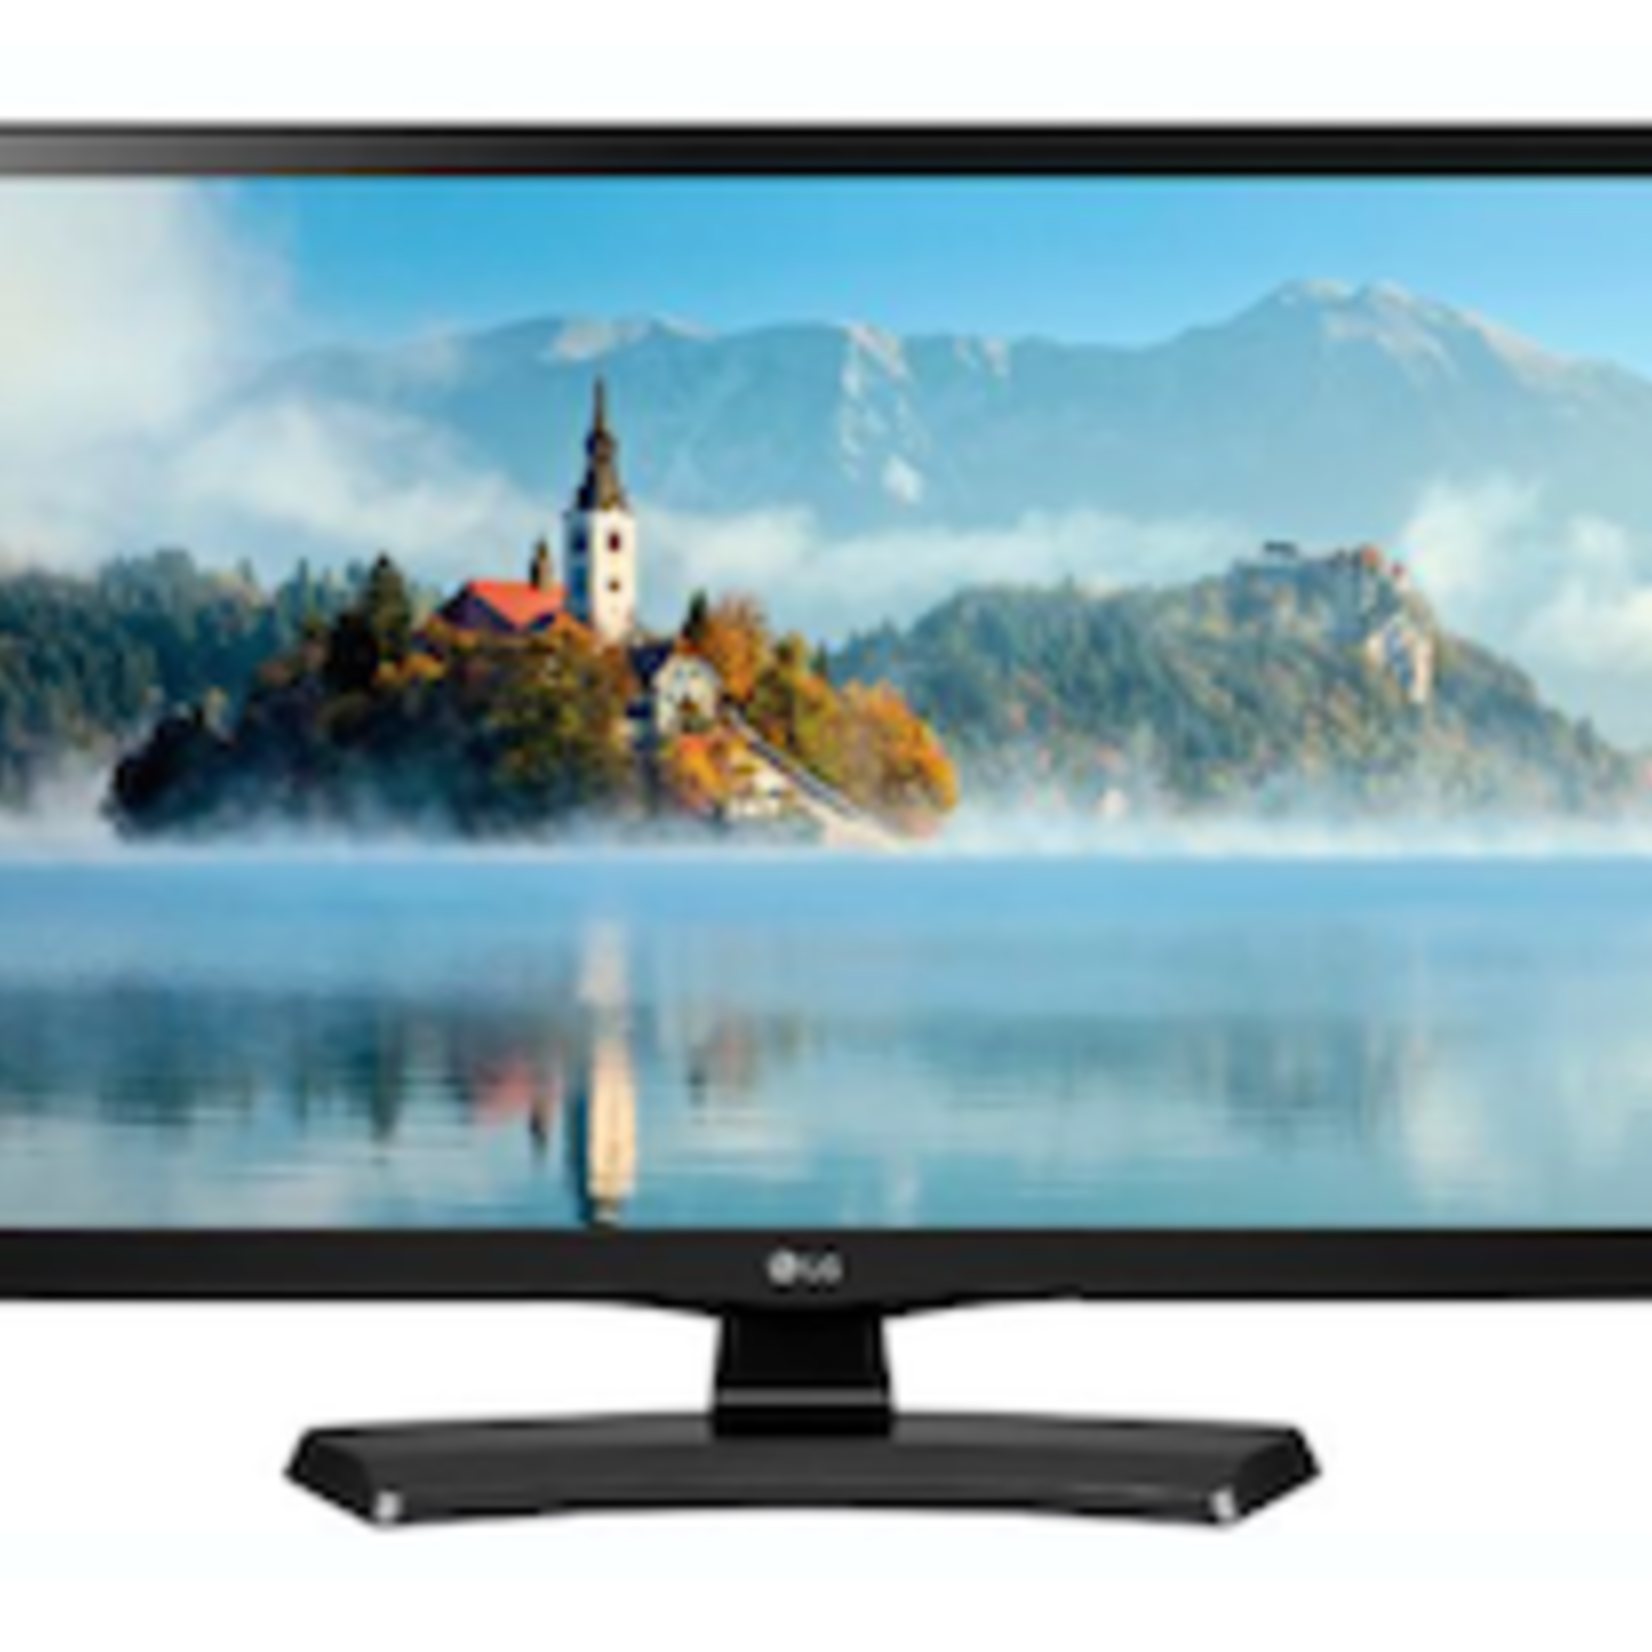 LG LJ4540 24LJ4540 24" LED-LCD TV - HDTV - LED Backlight - 1366 x 768 Resolution